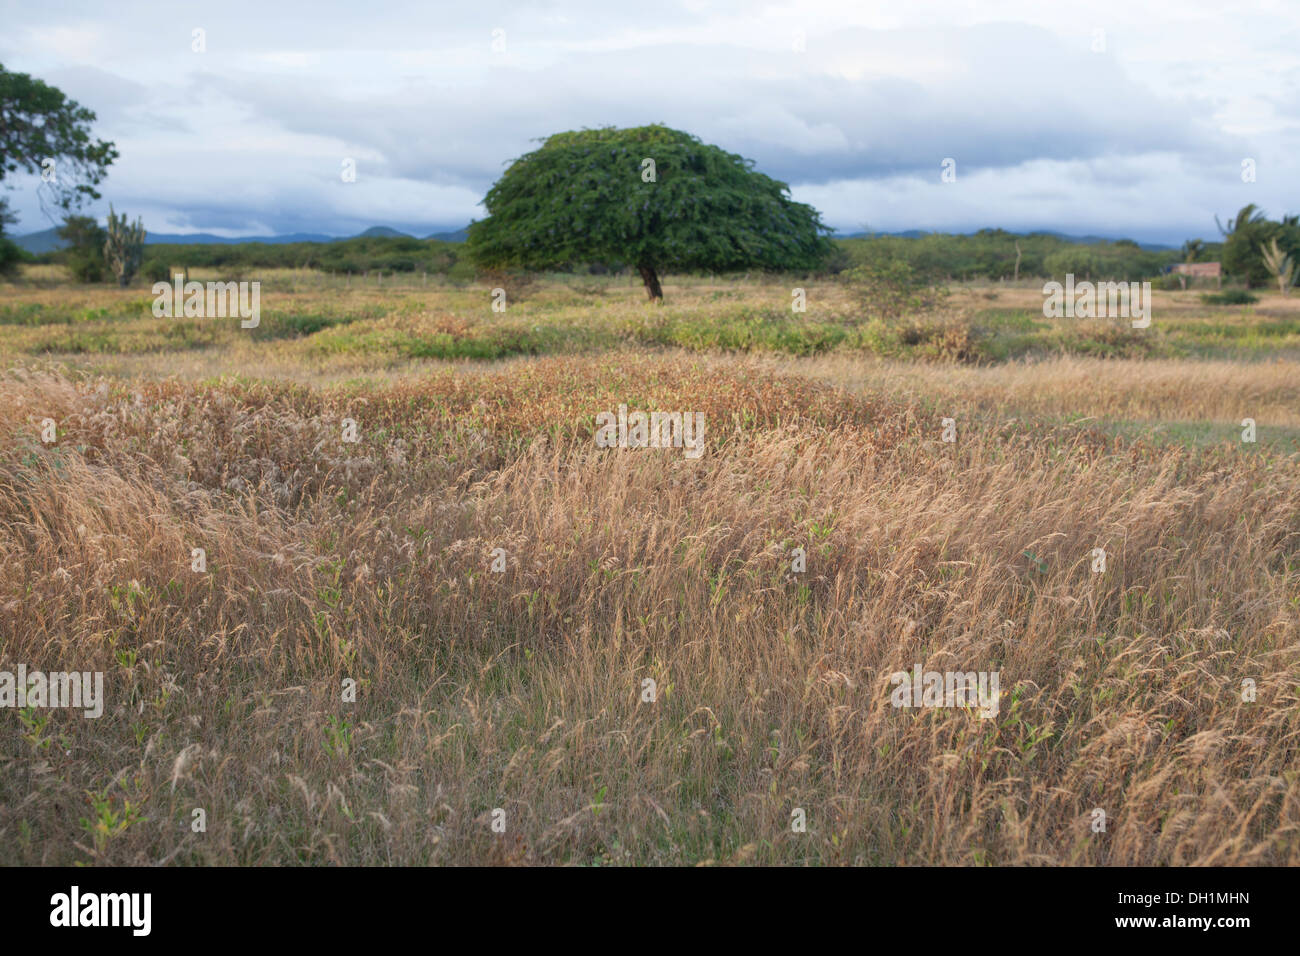 Una hermosa escena de la naturaleza en la región del Istmo del estado de Oaxaca, con un árbol y hierba en el viento. Foto de stock